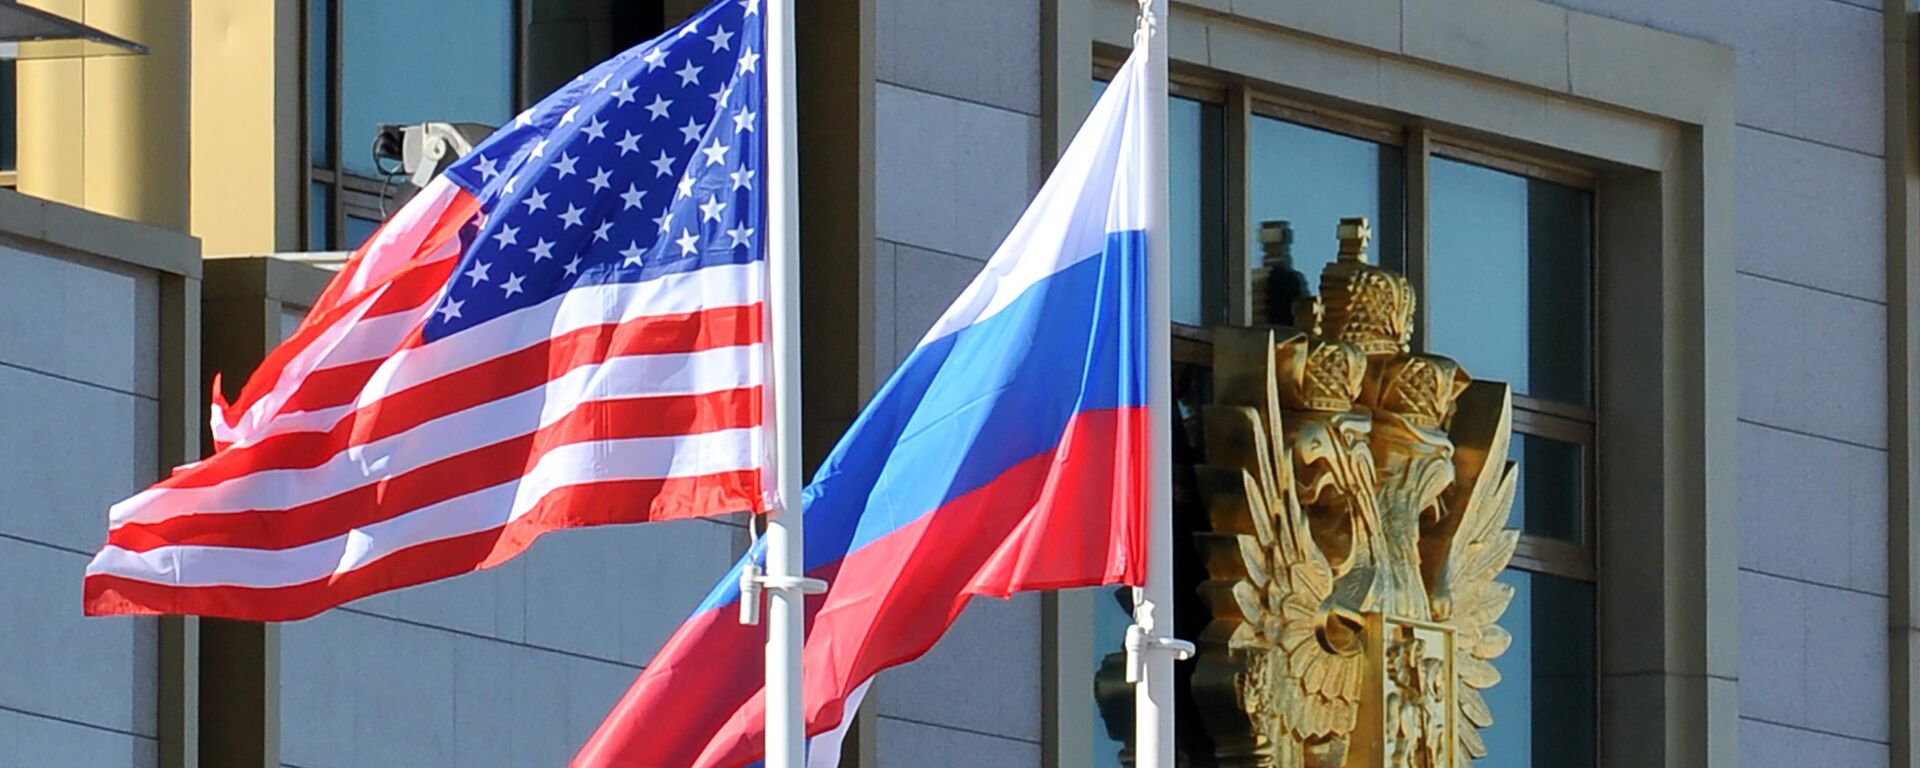 Banderas de EEUU y Rusia - Sputnik Mundo, 1920, 09.02.2021